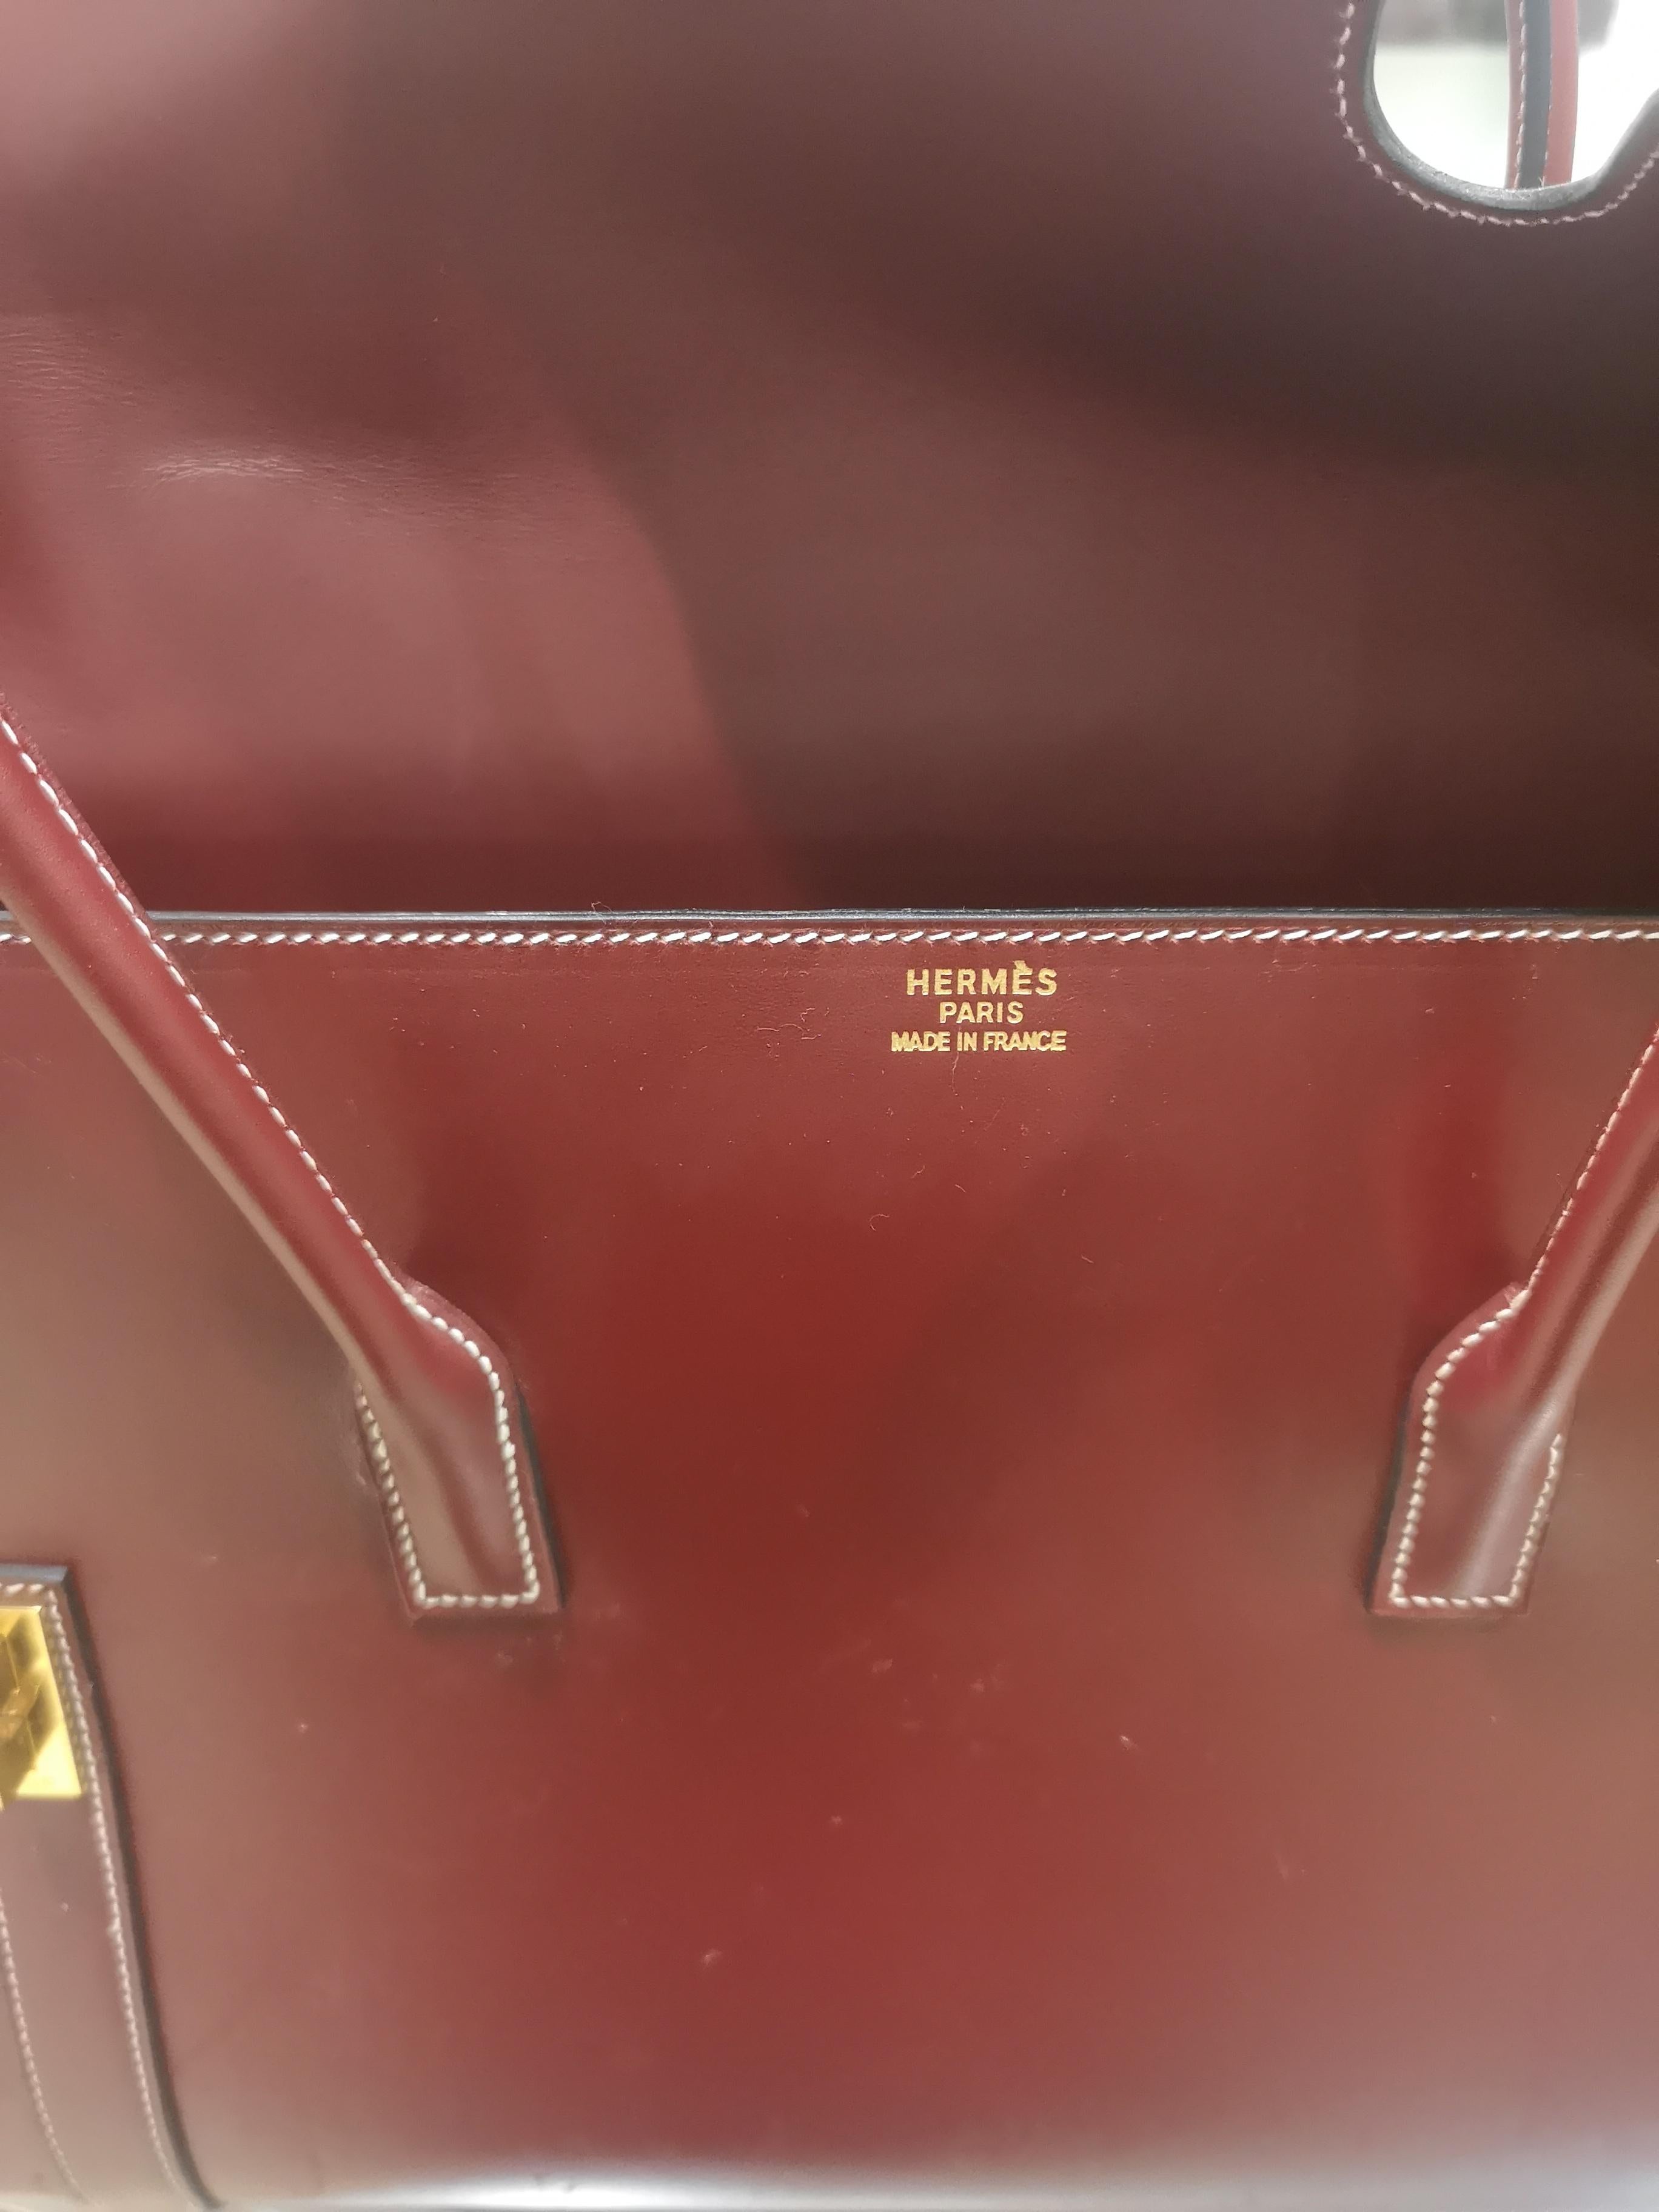 Hermès bordeaux shoulder bag gold tone hardware
Measurements:
37 * 24 cm, 13 cm depth